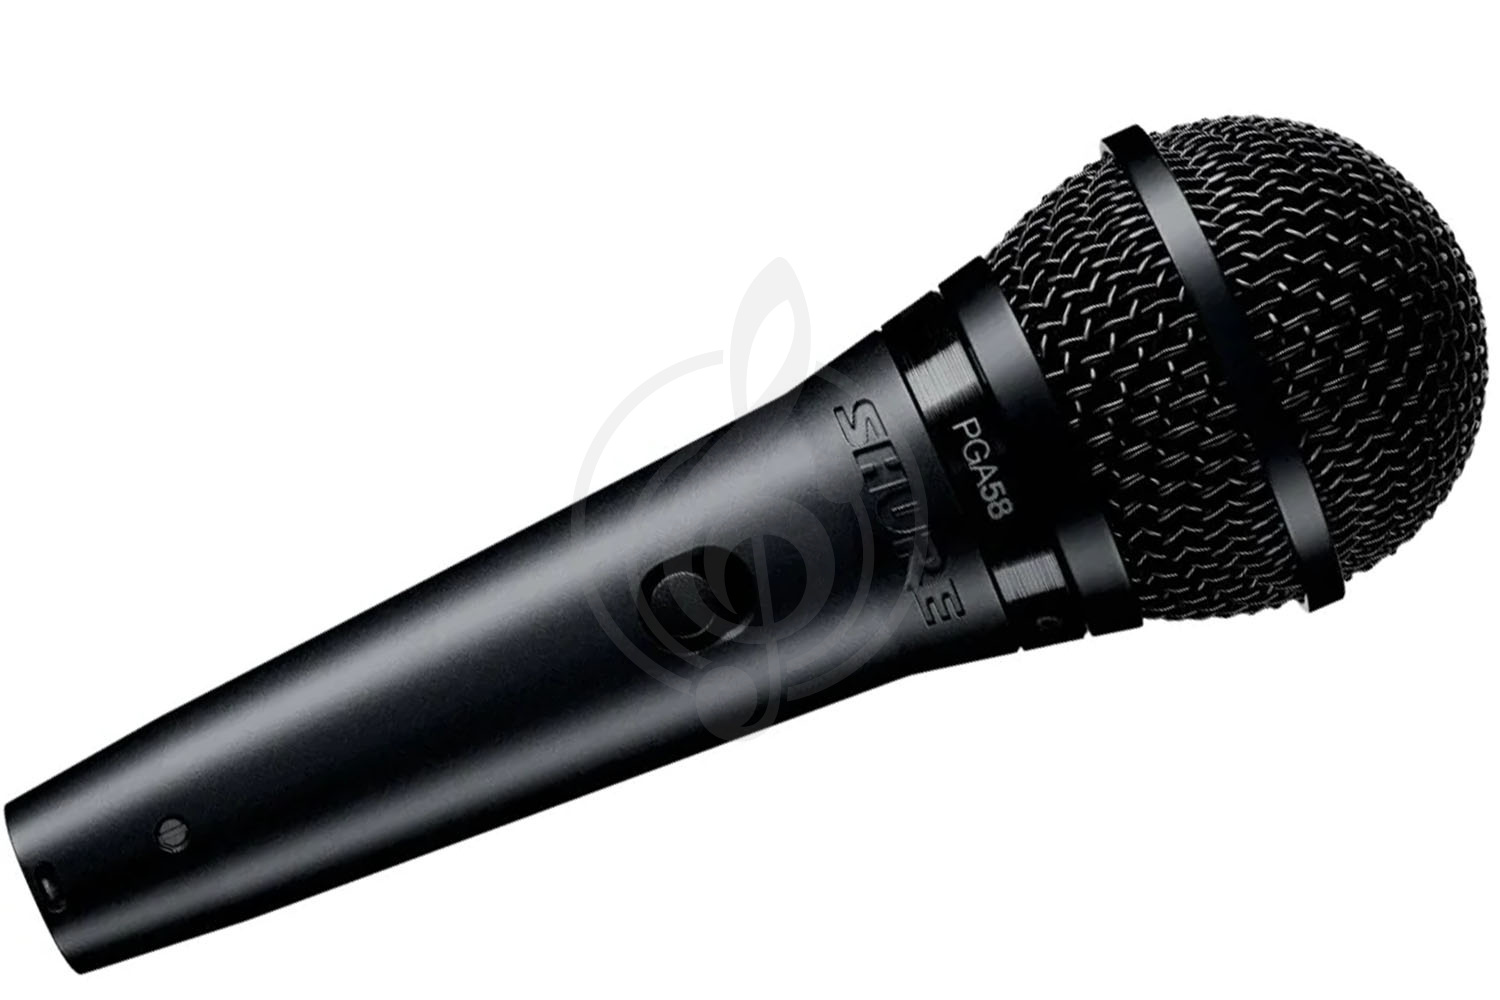 Динамический вокальный микрофон Динамические вокальные микрофоны Shure SHURE PGA58-QTR-E - динамический вокальный микрофон PGA58-QTR-E - фото 1